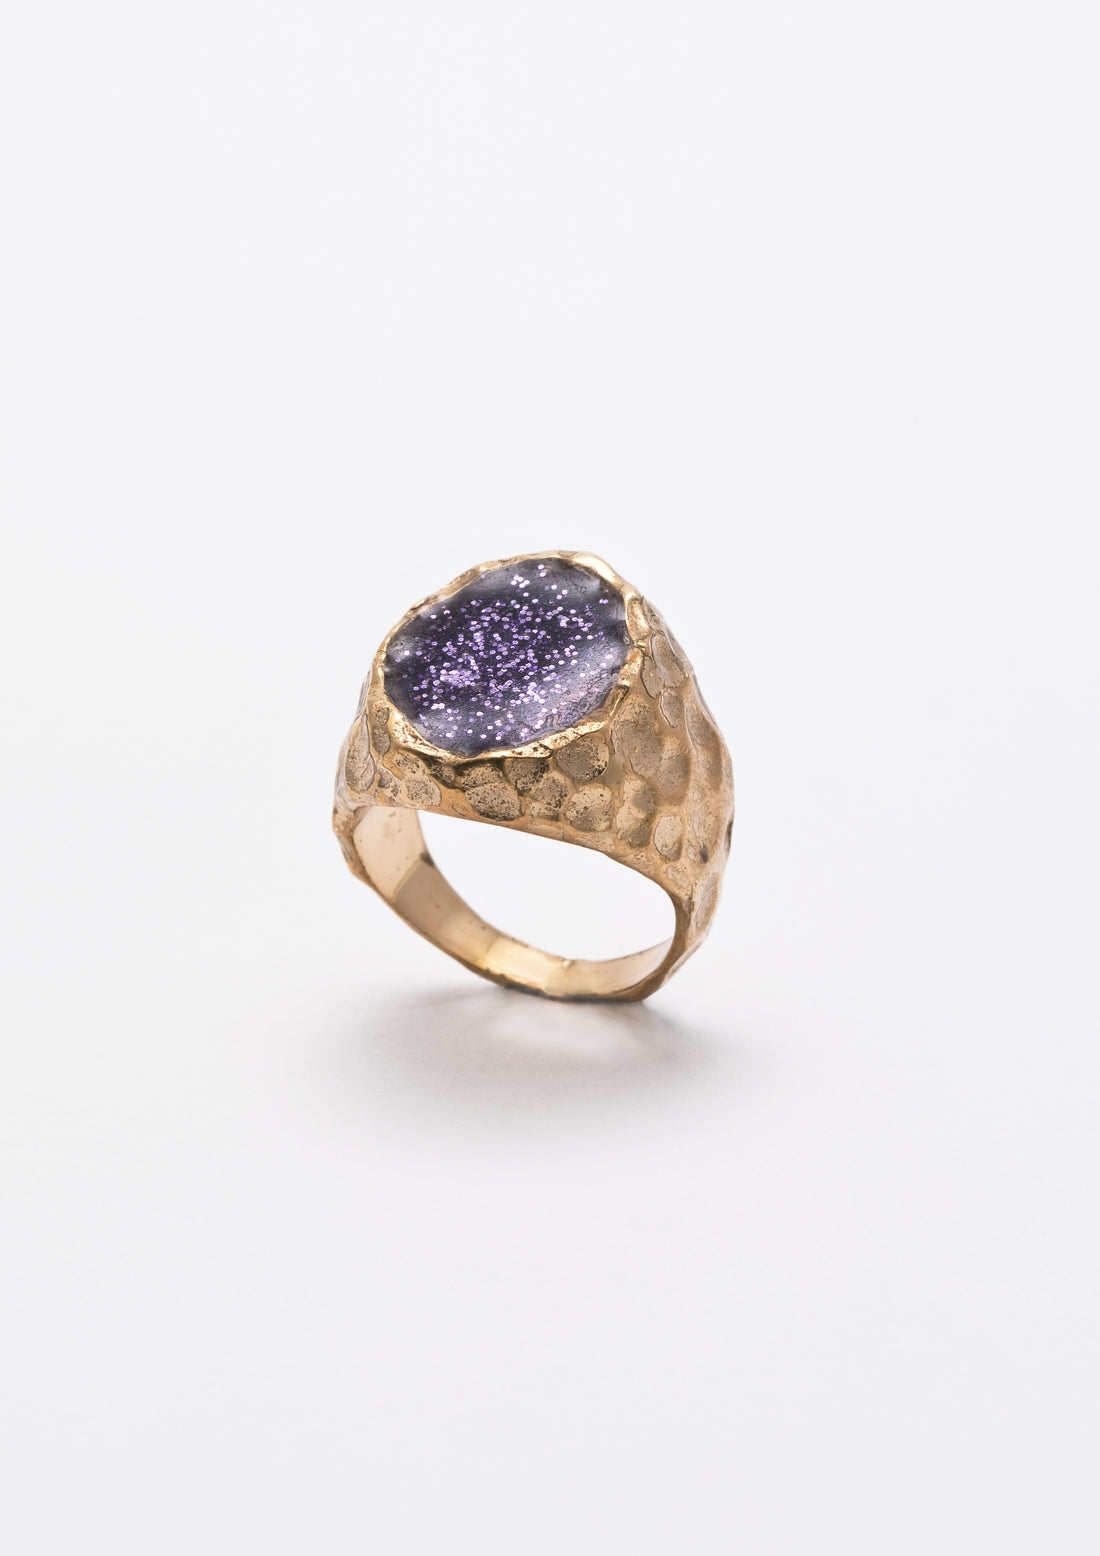 Purple sigillum ring